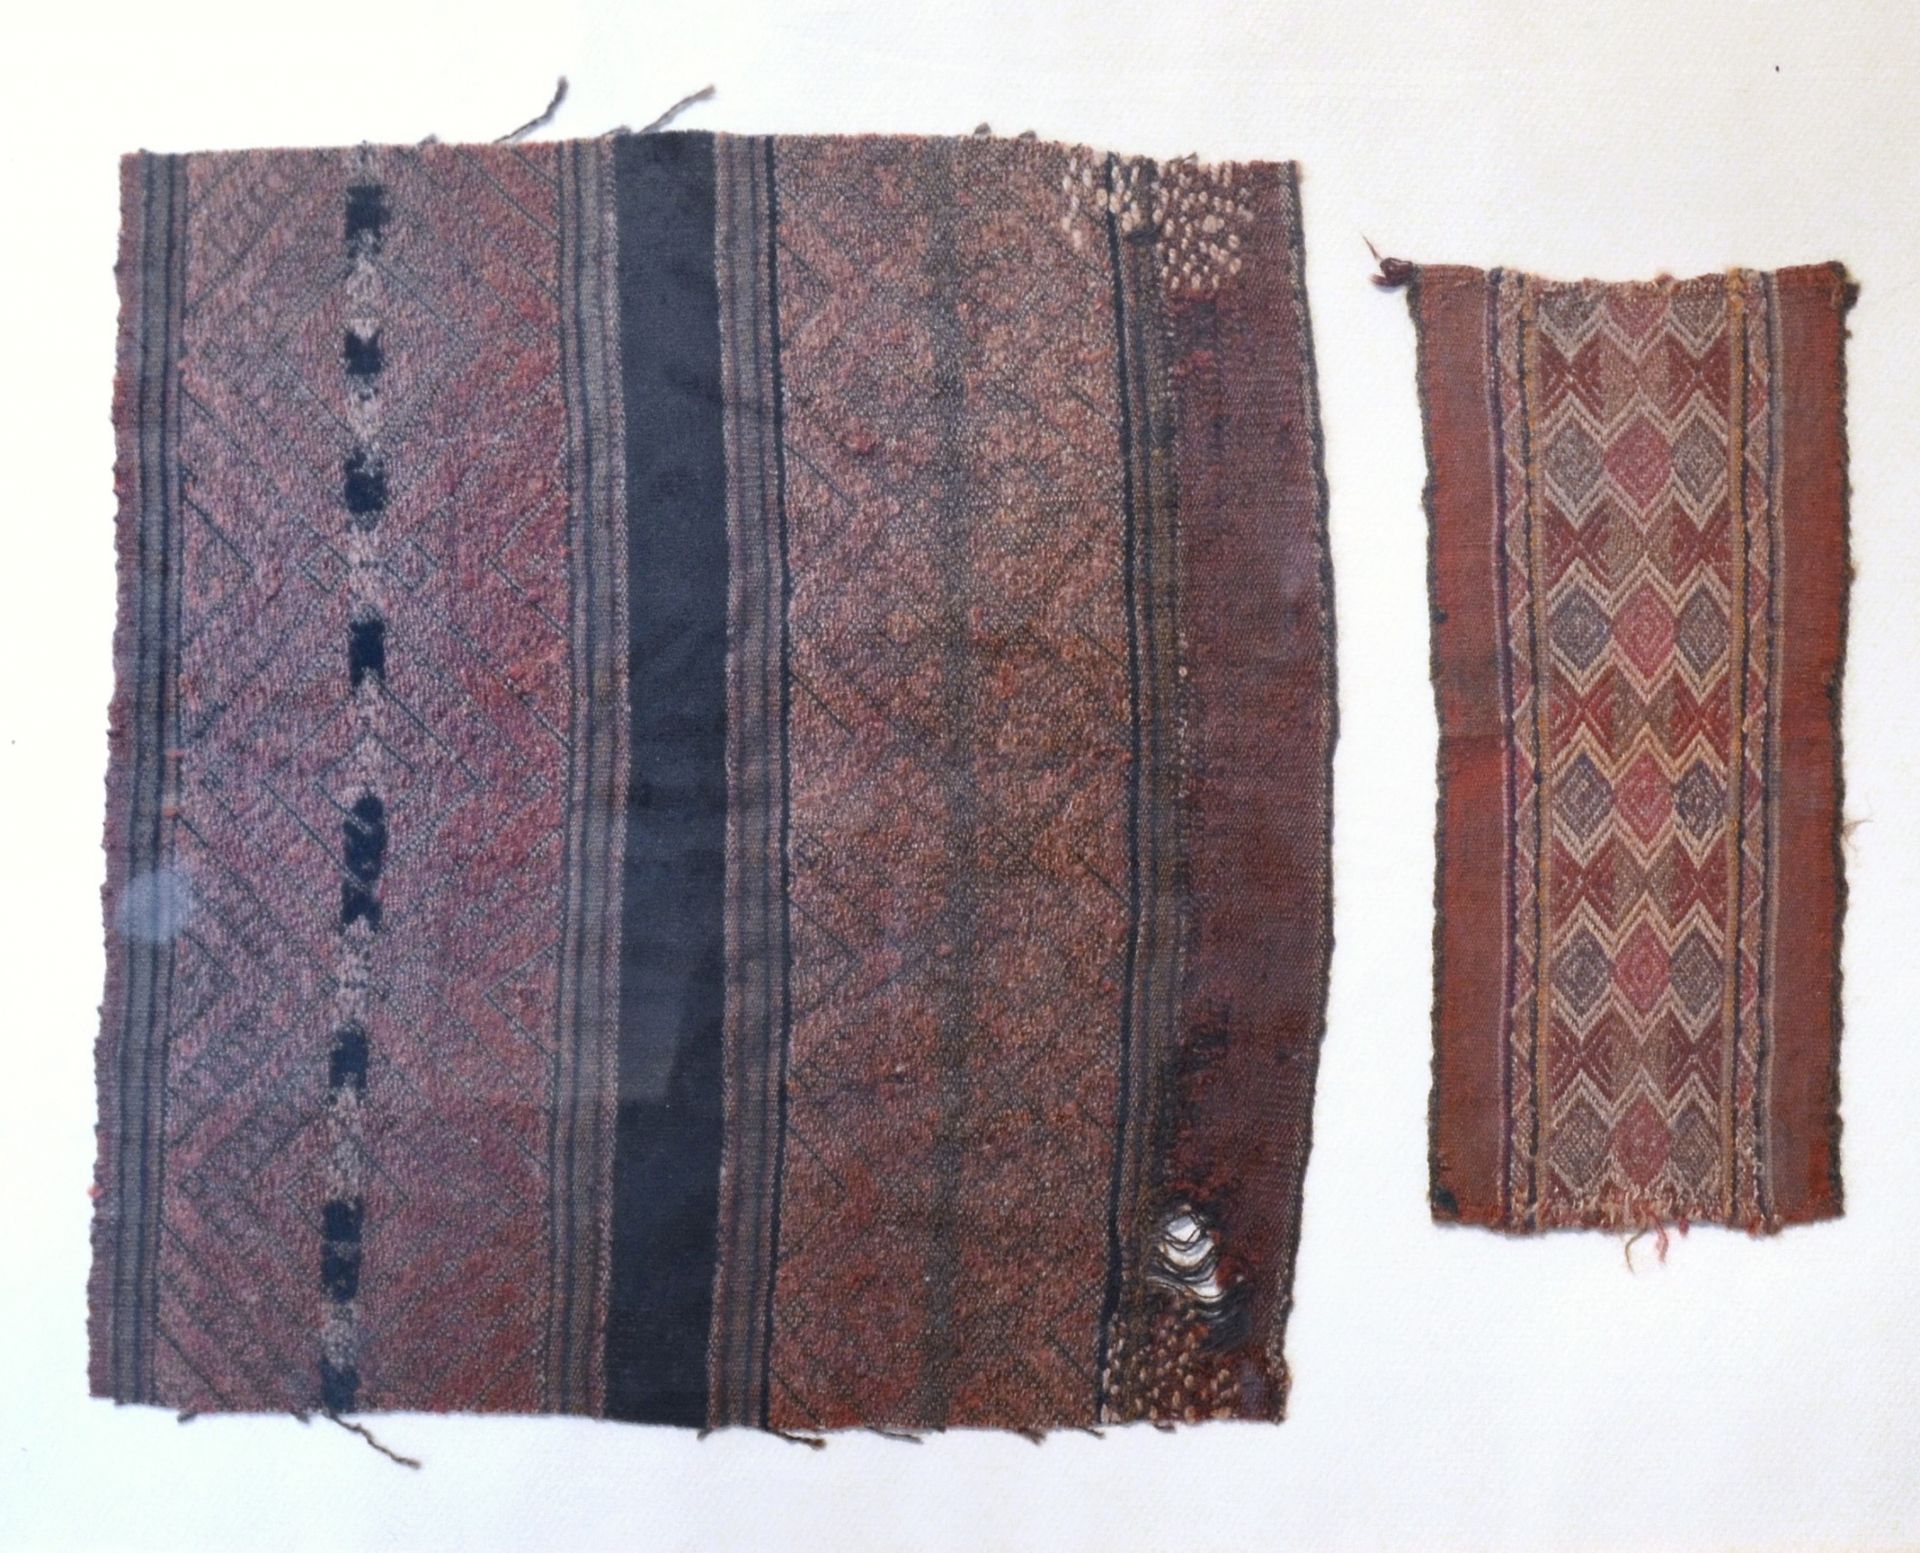 Deux fragments de tissu Ica, Peru, 1450-1532 n. Chr.

30,5 x 29 cm

22,5 x 10 cm